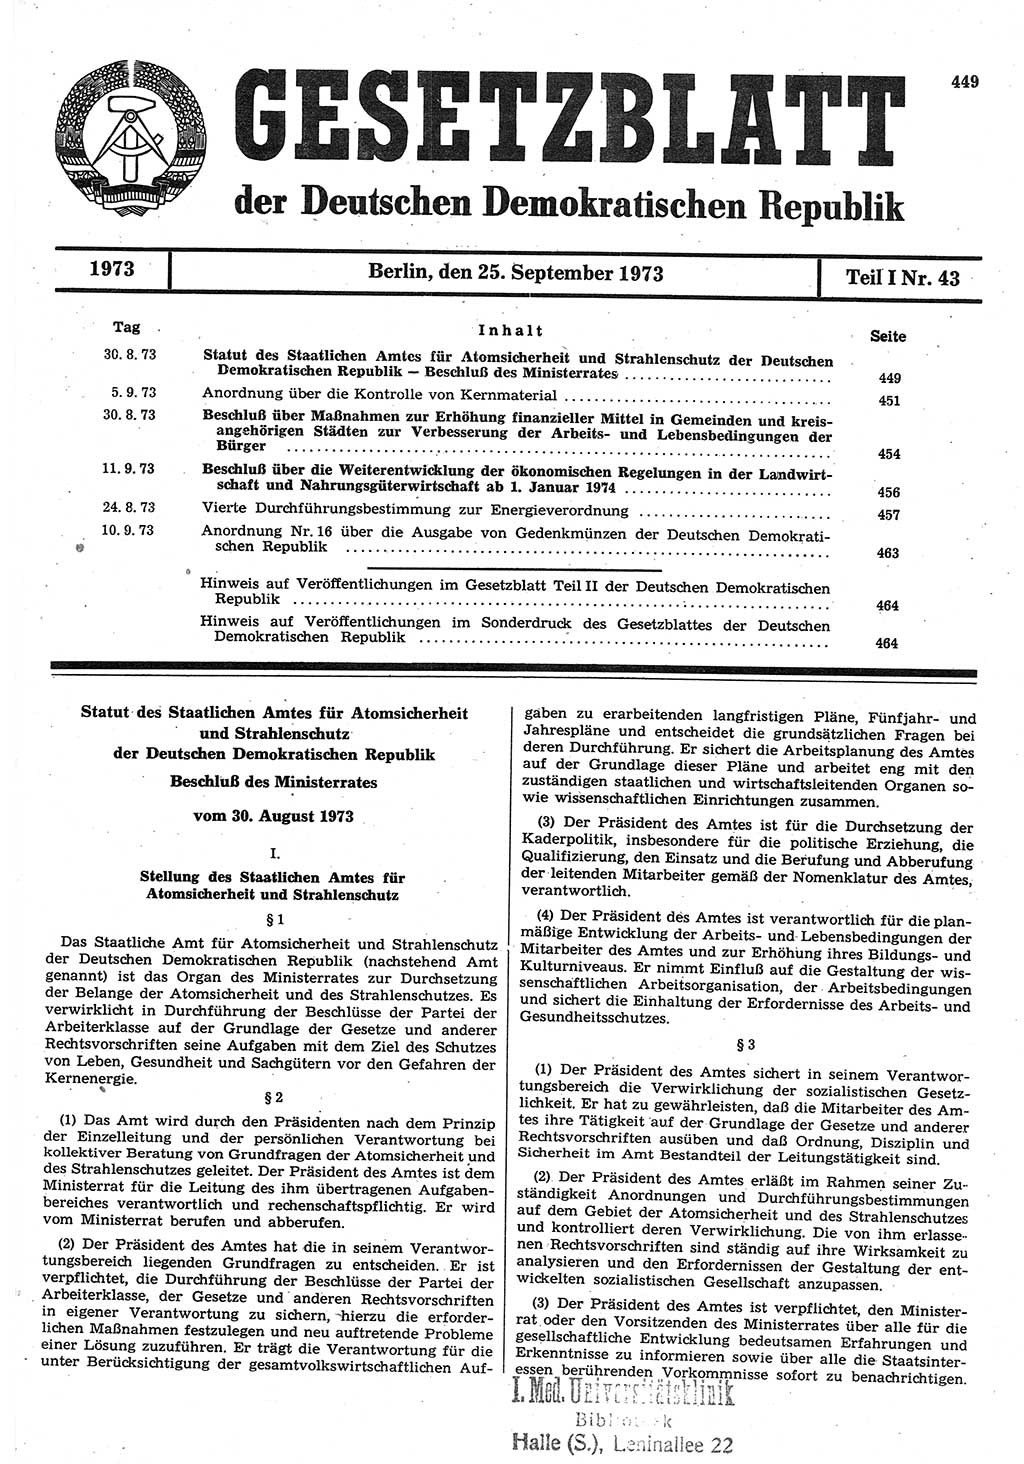 Gesetzblatt (GBl.) der Deutschen Demokratischen Republik (DDR) Teil Ⅰ 1973, Seite 449 (GBl. DDR Ⅰ 1973, S. 449)